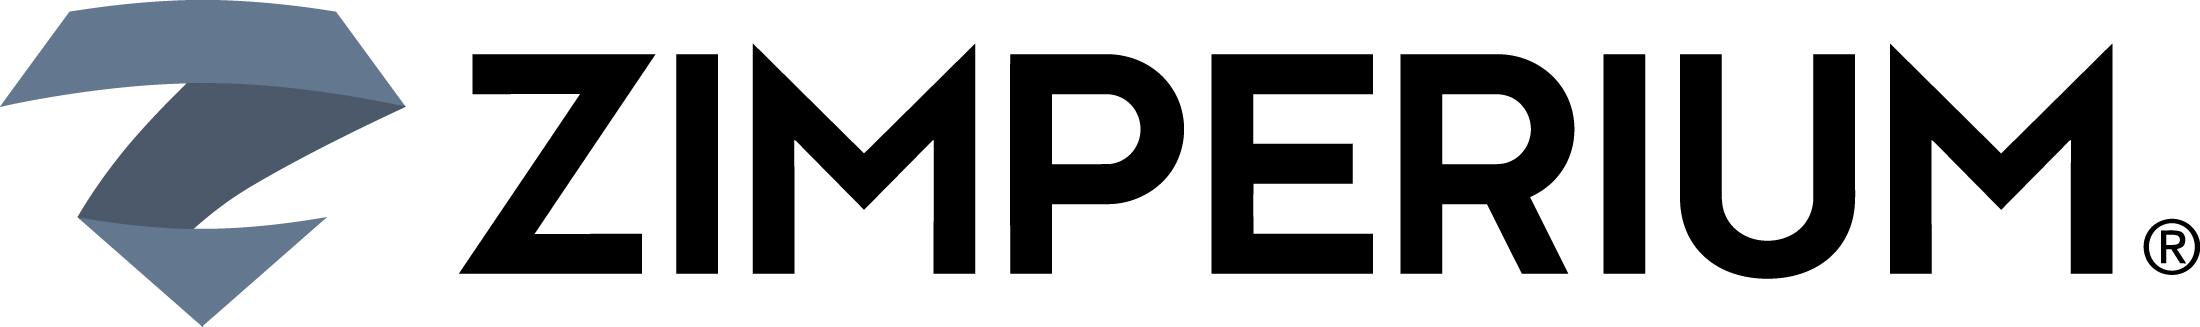 ZIMPERIUM-logo_light_bg-1